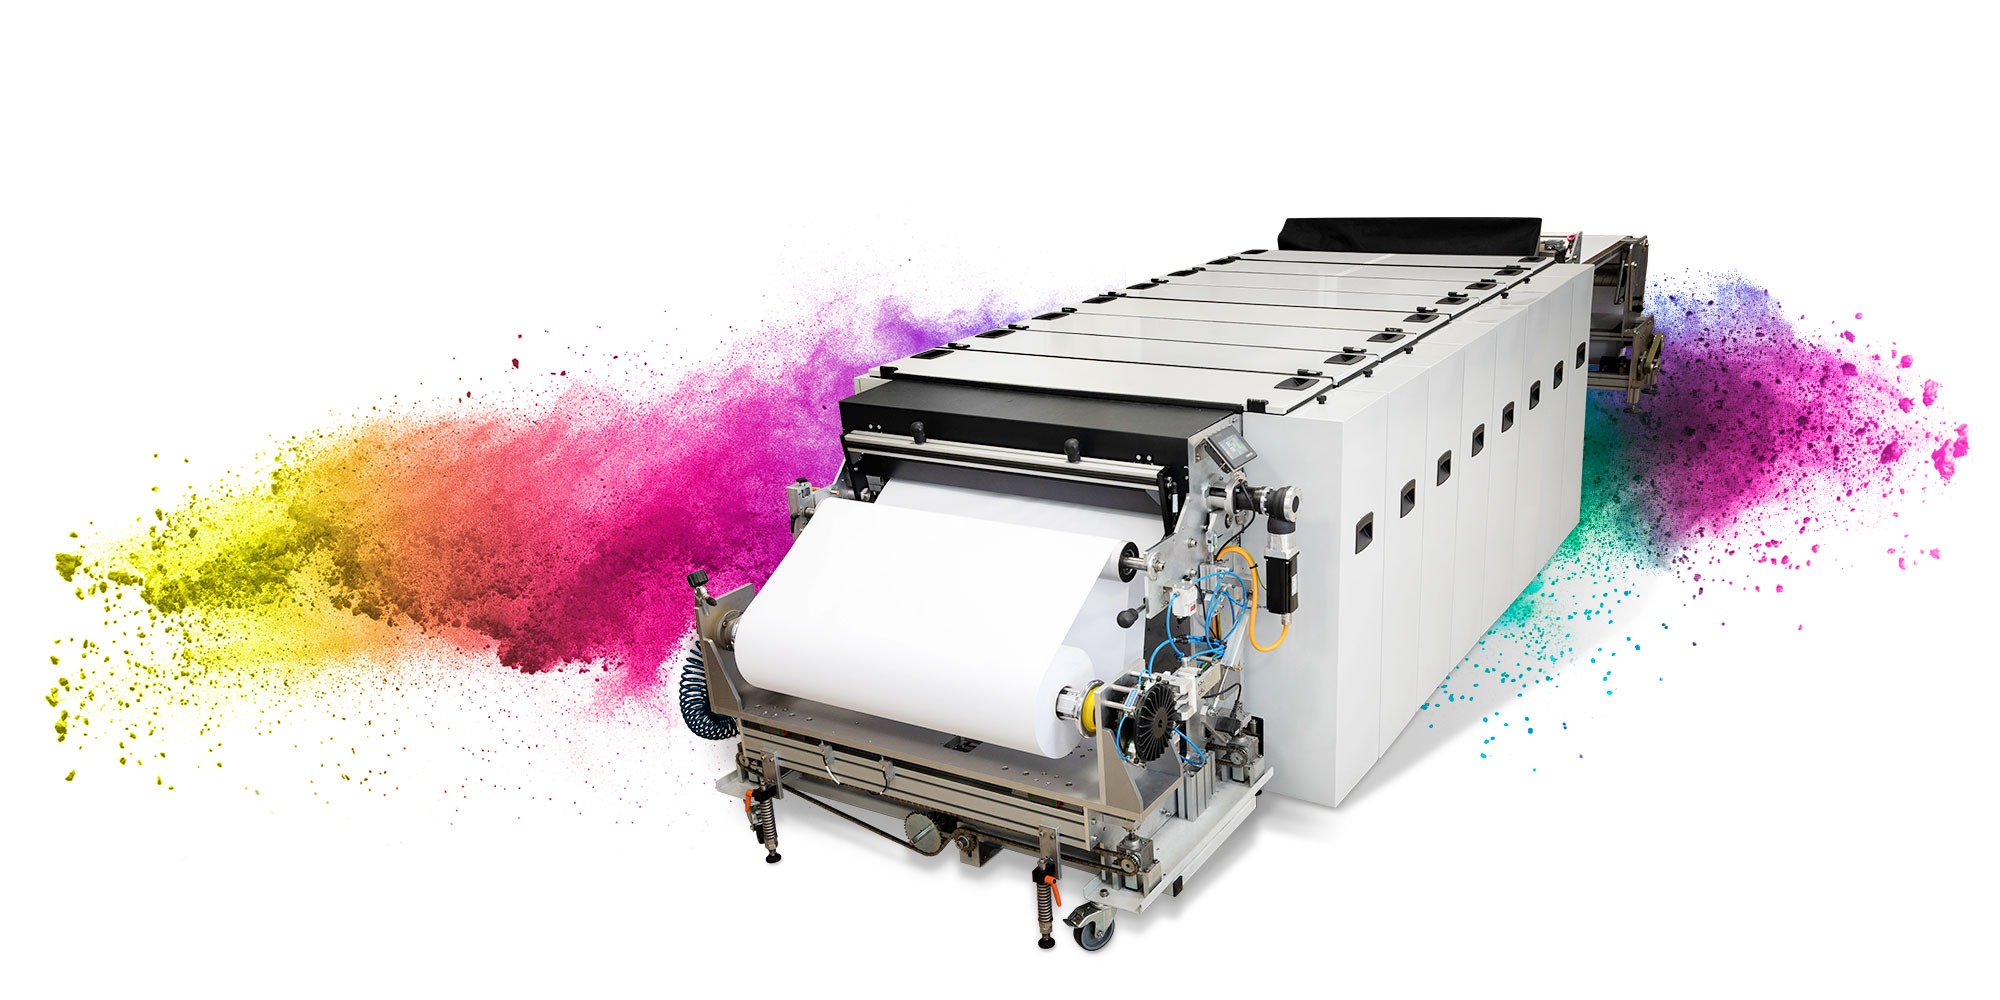 La photo montre la machine d'impression céramique Ceramic Decal Printer XT. Elle imprime des décalcomanies céramiques en grand format et des décors pour l'industrie de la vaisselle.